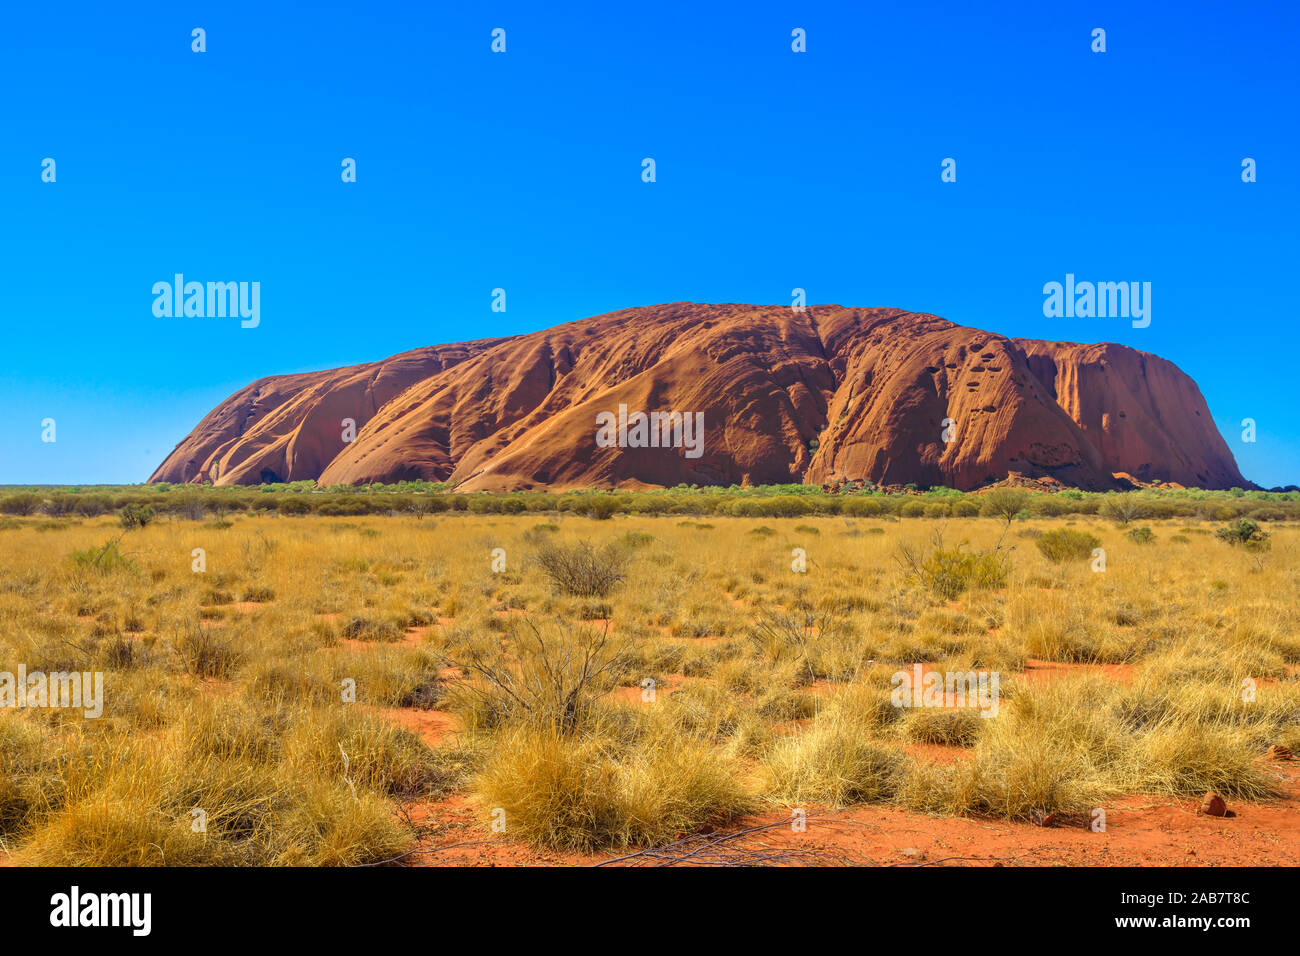 Roter Sand der australischen Outback zum Ayers Rock in der trockenen Jahreszeit, riesiger Monolith aus Sandstein im Uluru-Kata Tjuta National Park, UNESCO, Australien Stockfoto